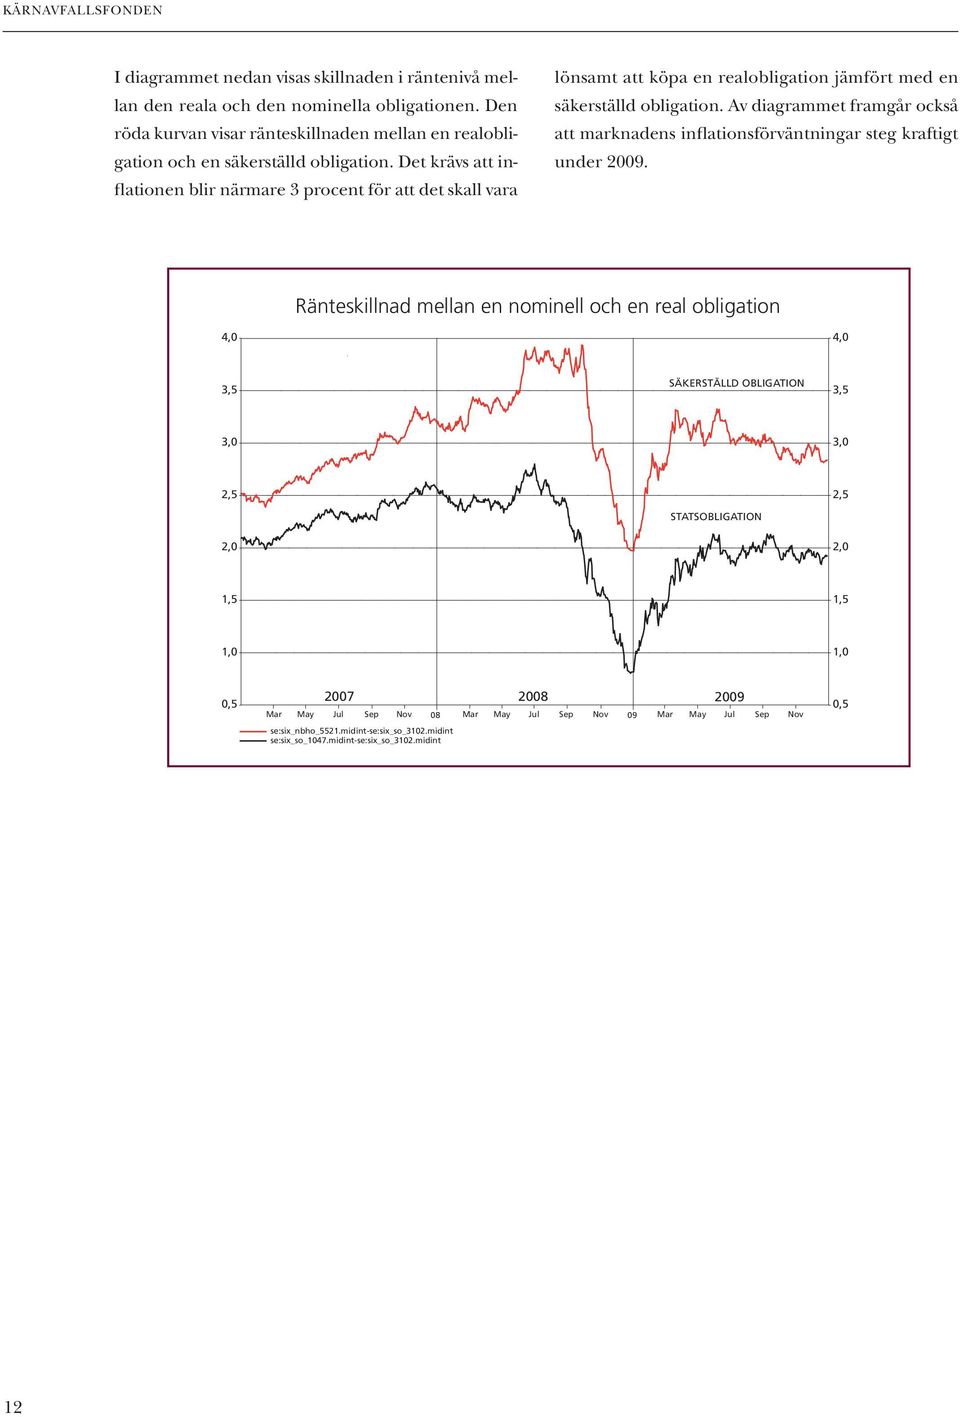 av diagrammet framgår också att marknadens inflationsförväntningar steg kraftigt under 2009.